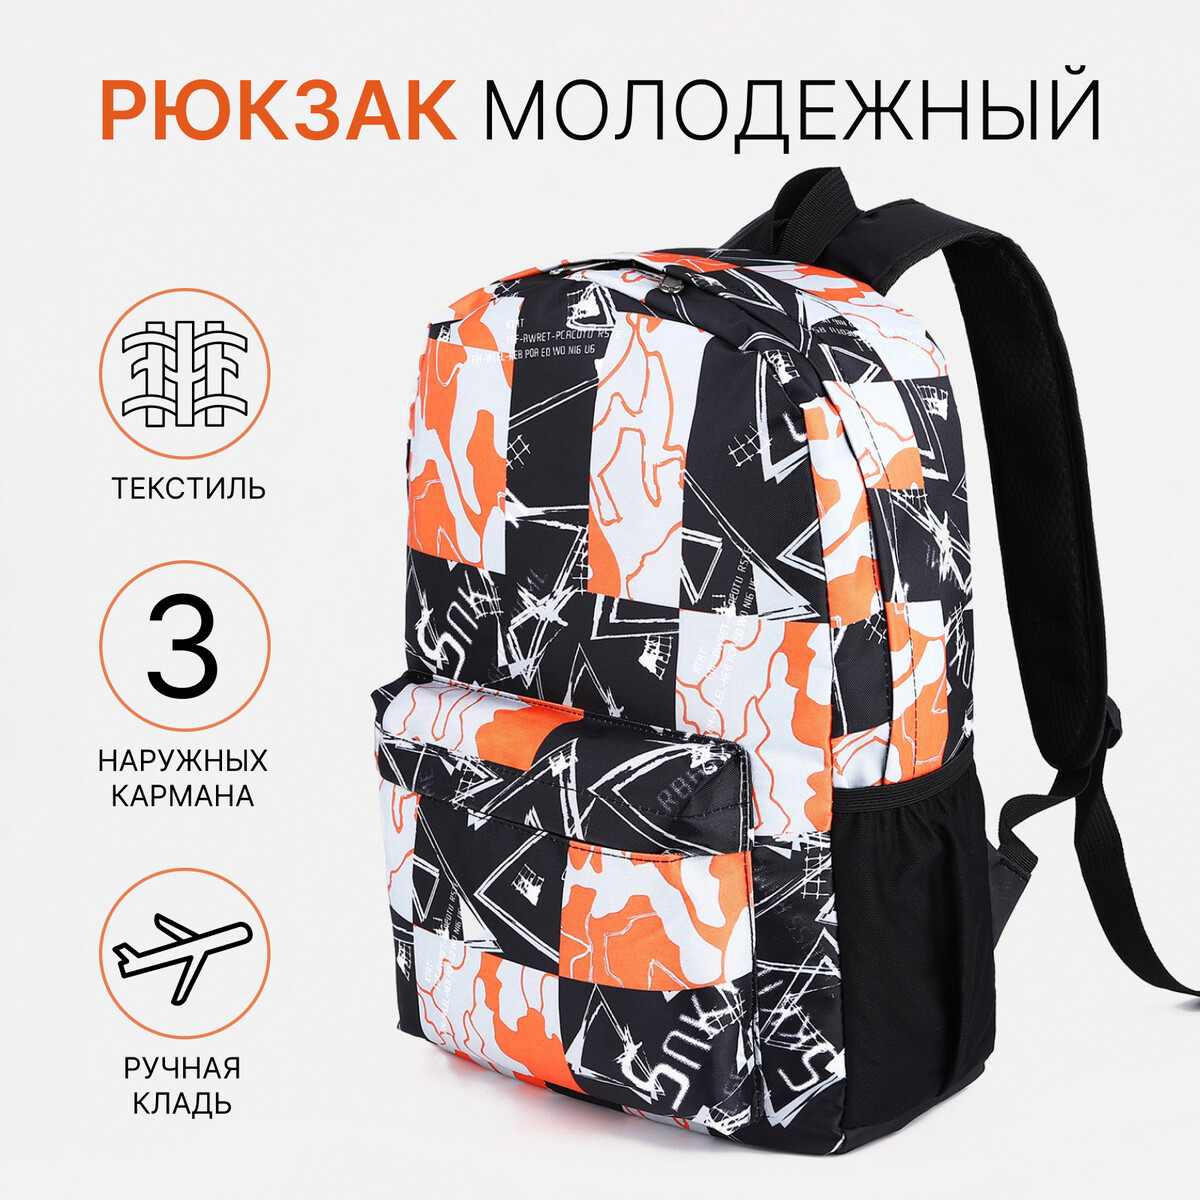 Рюкзак школьный из текстиля на молнии, 3 кармана, цвет оранжевый/черный